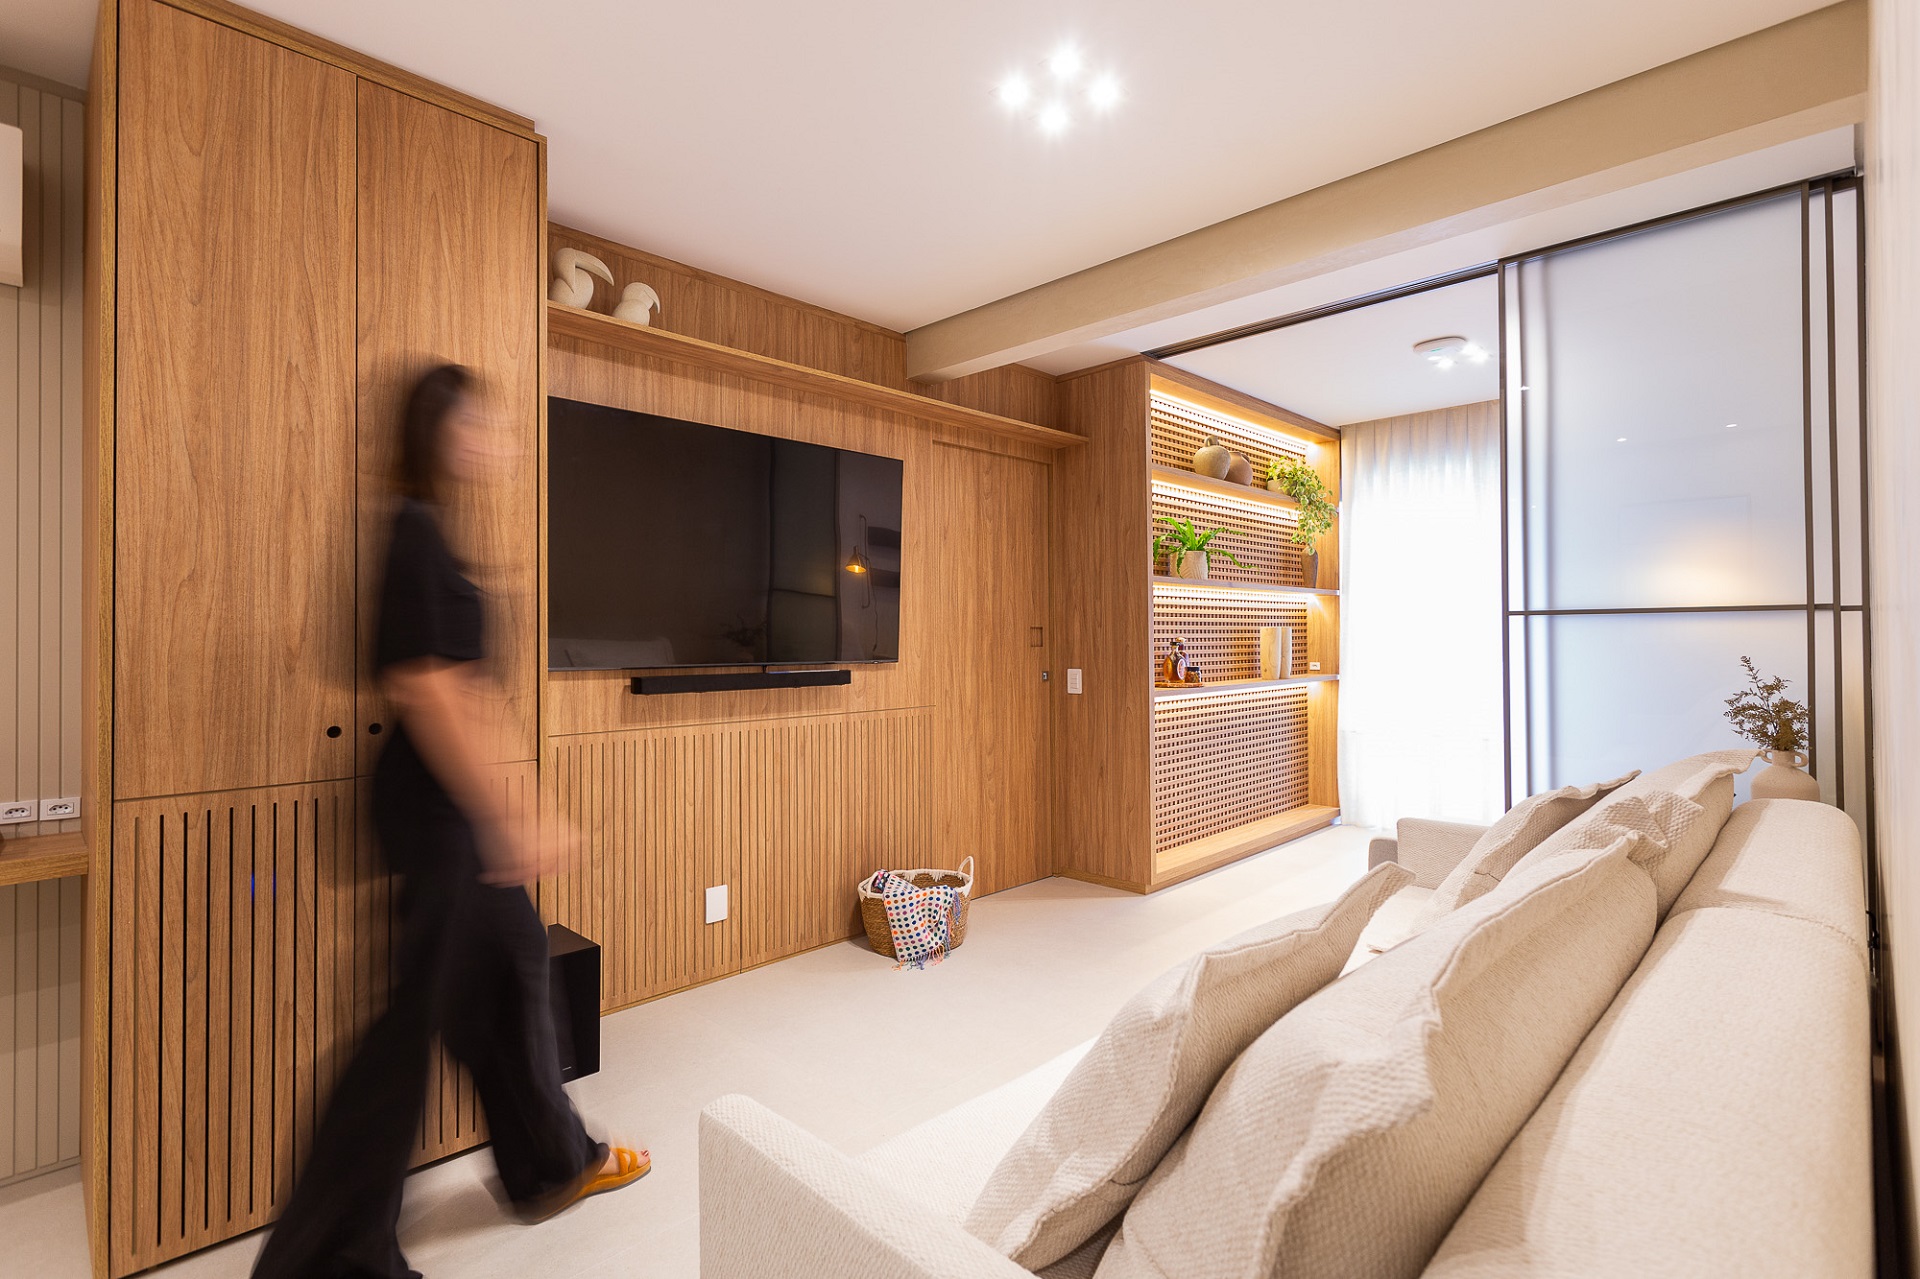 Sala em apartamento pequeno com tons terrosos e detalhes em madeira